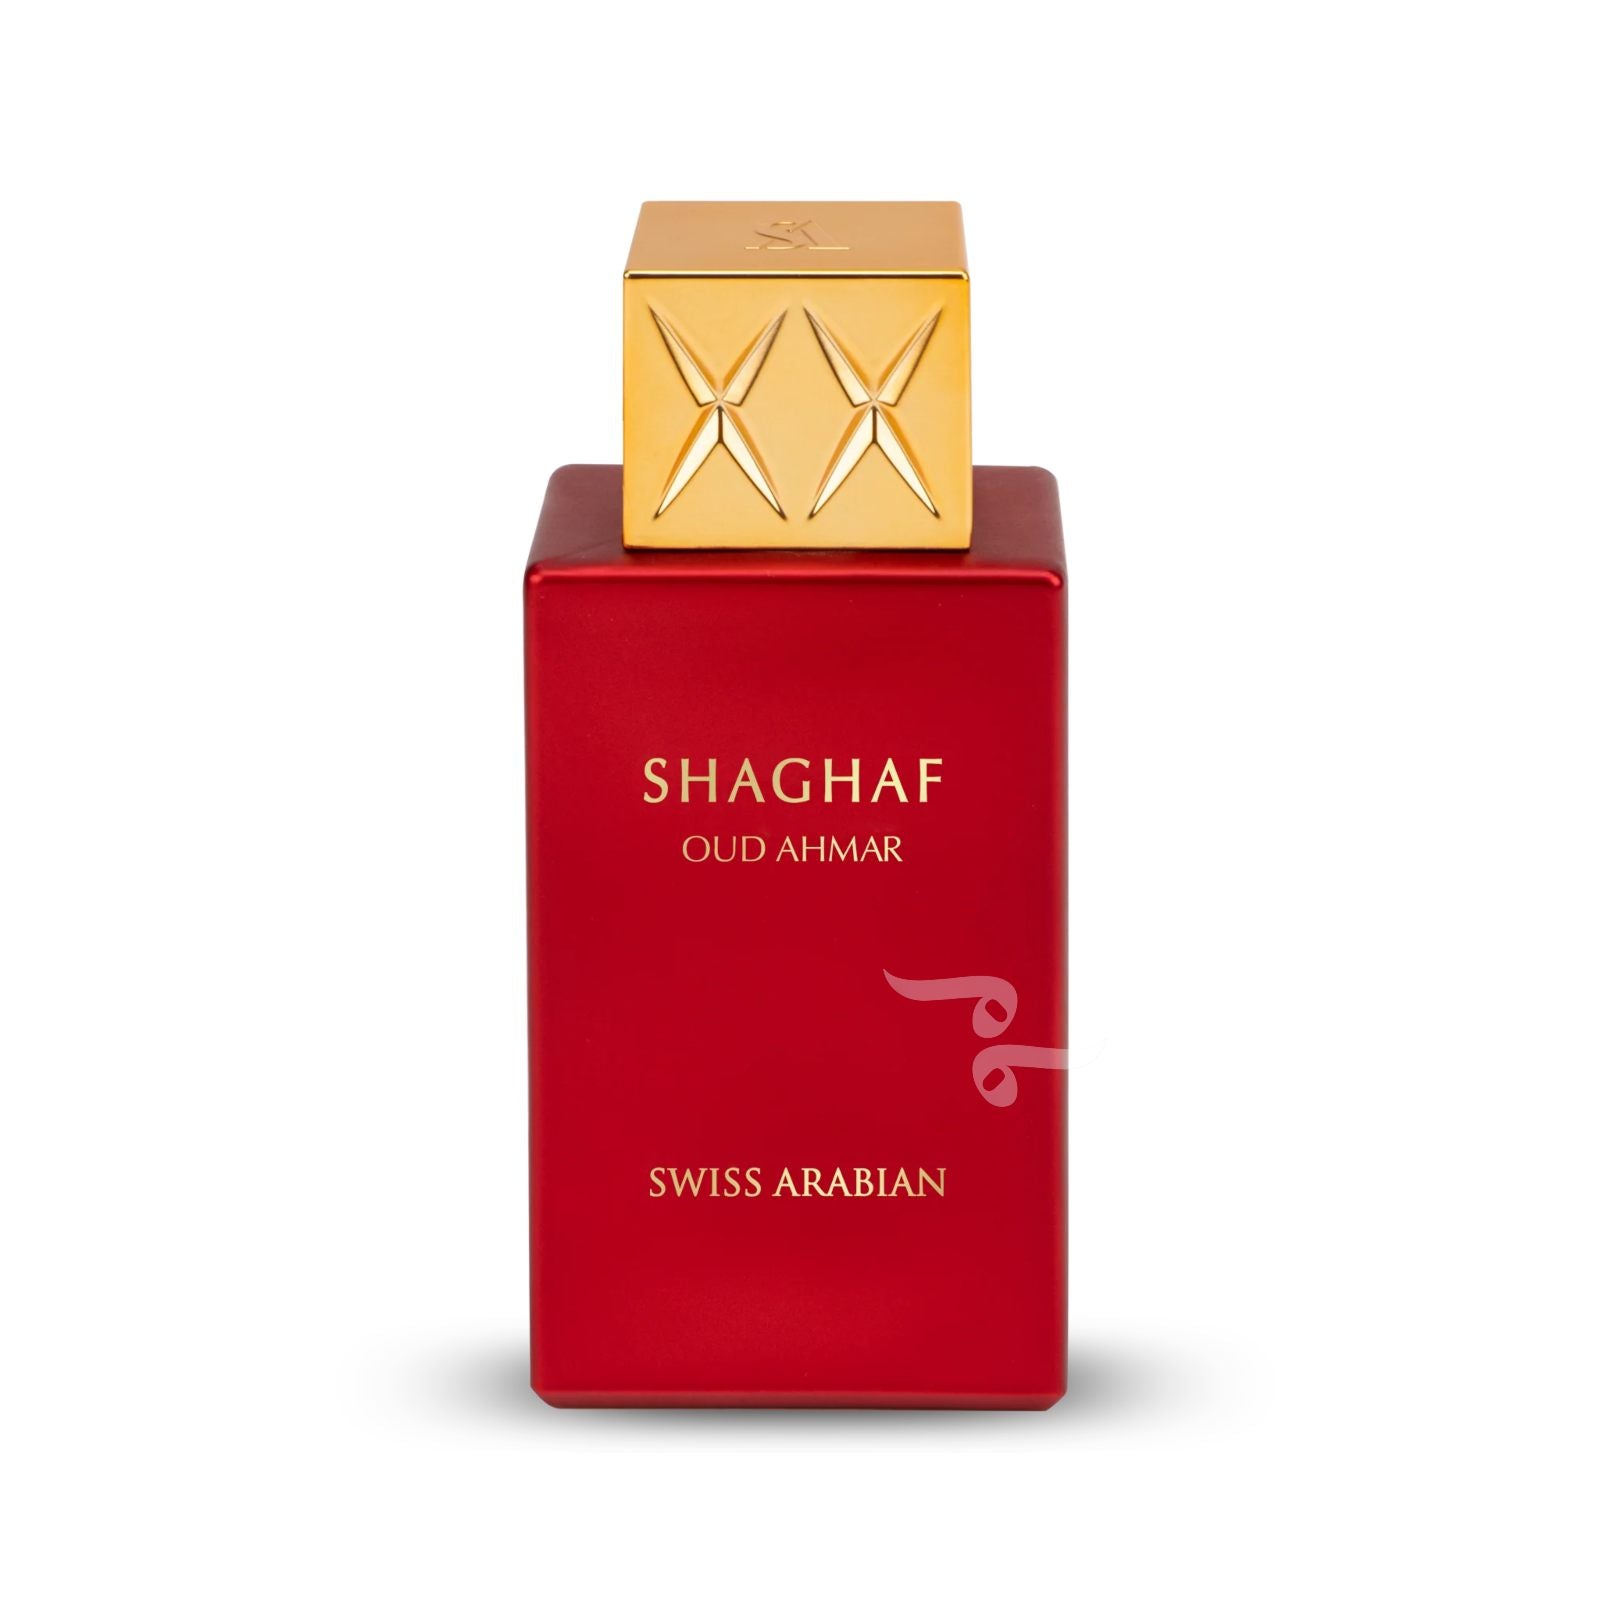 SHAGHAF OUD AHMAR By Swiss Arabian